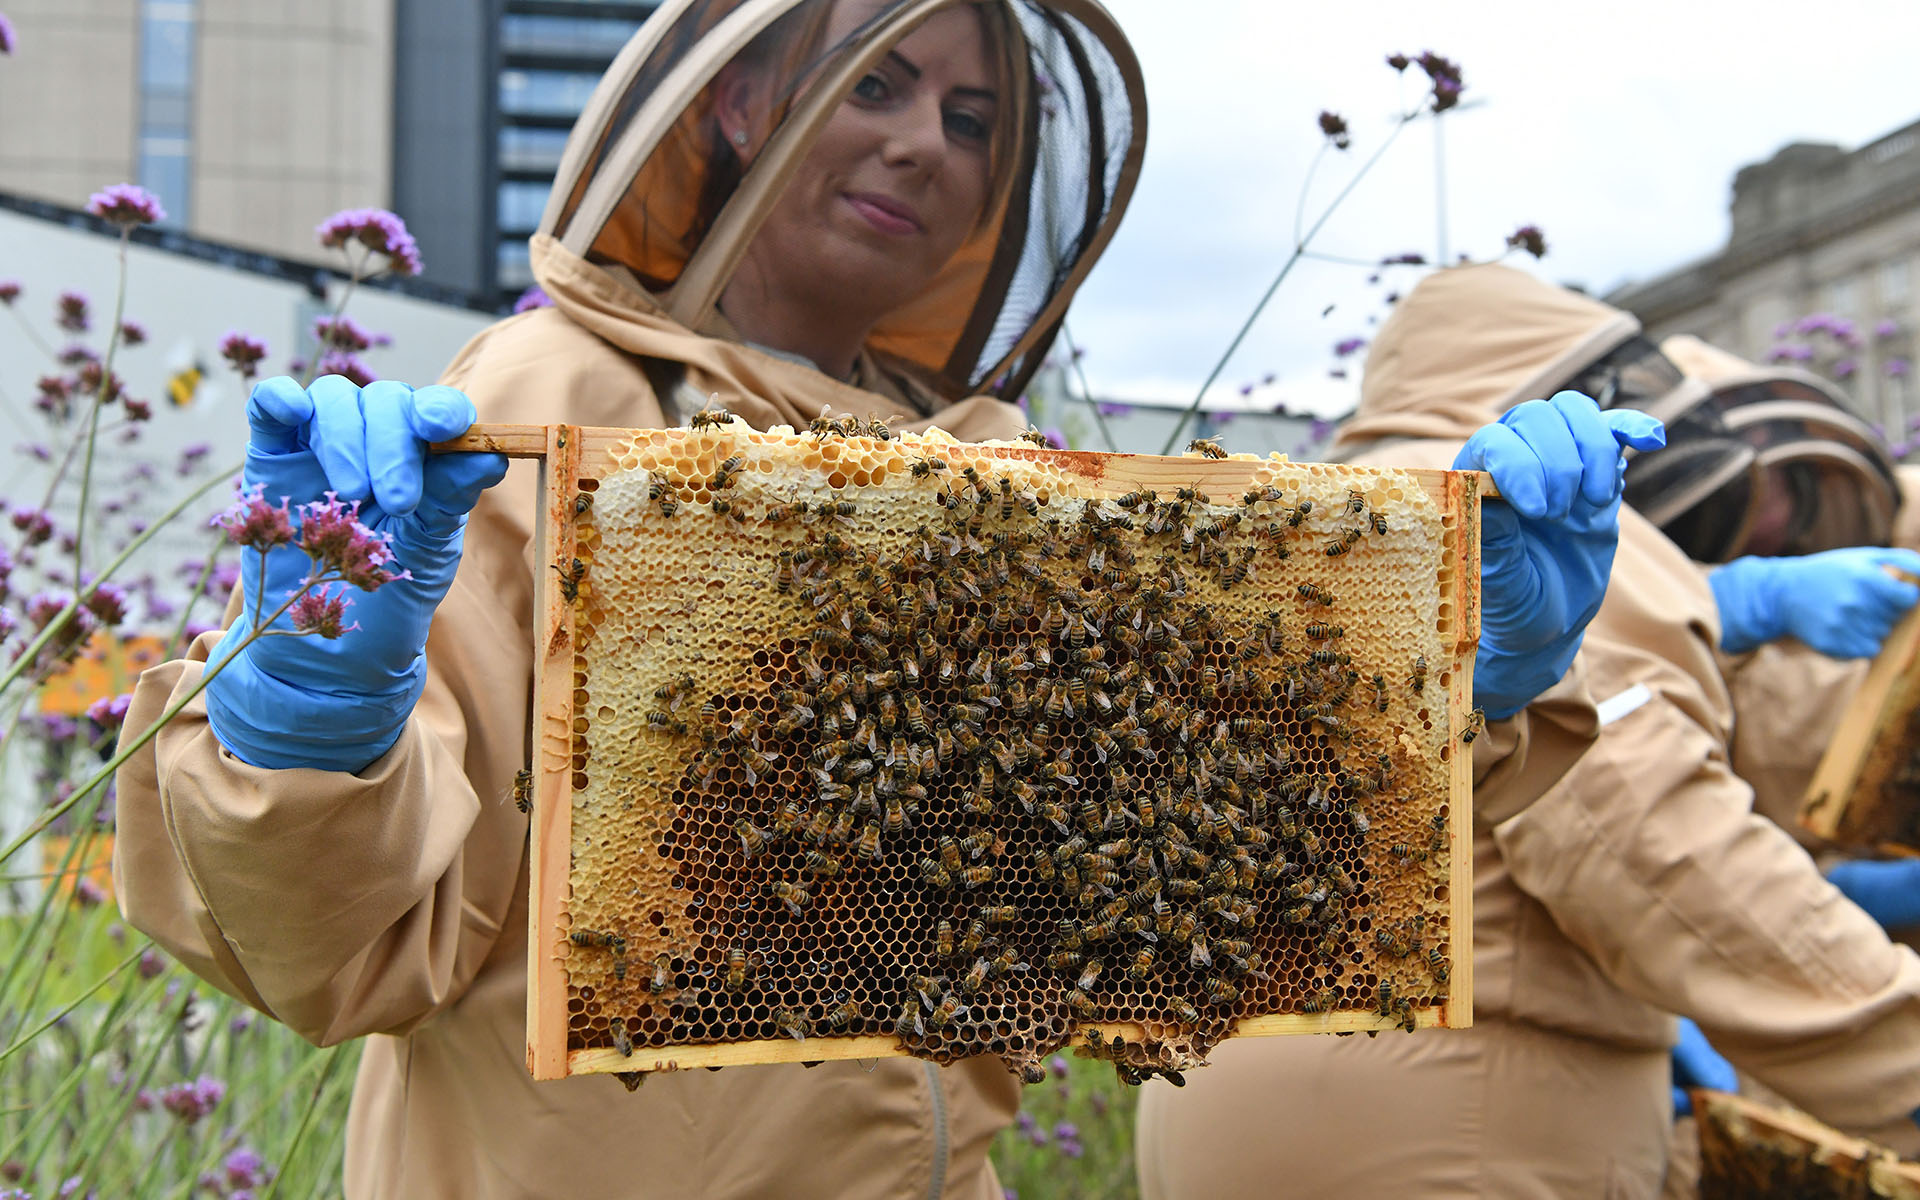 Honey extraction, Paradise Birmingham, MEPC managed asset.